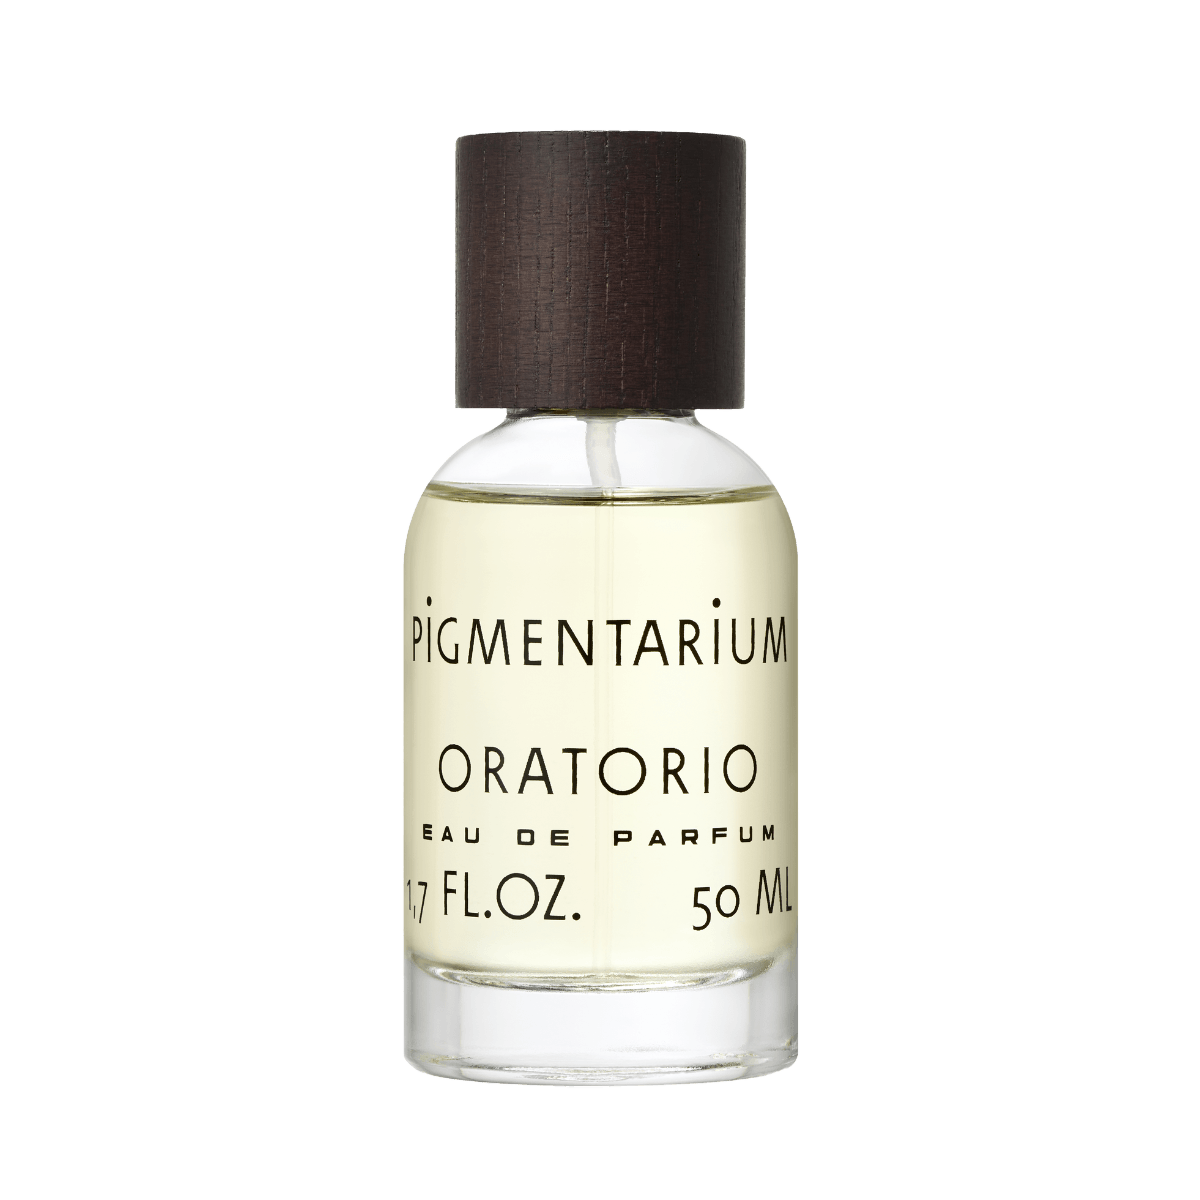 Image of Oratorio 50 ml eau de parfum by the perfume brand Pigmentarium